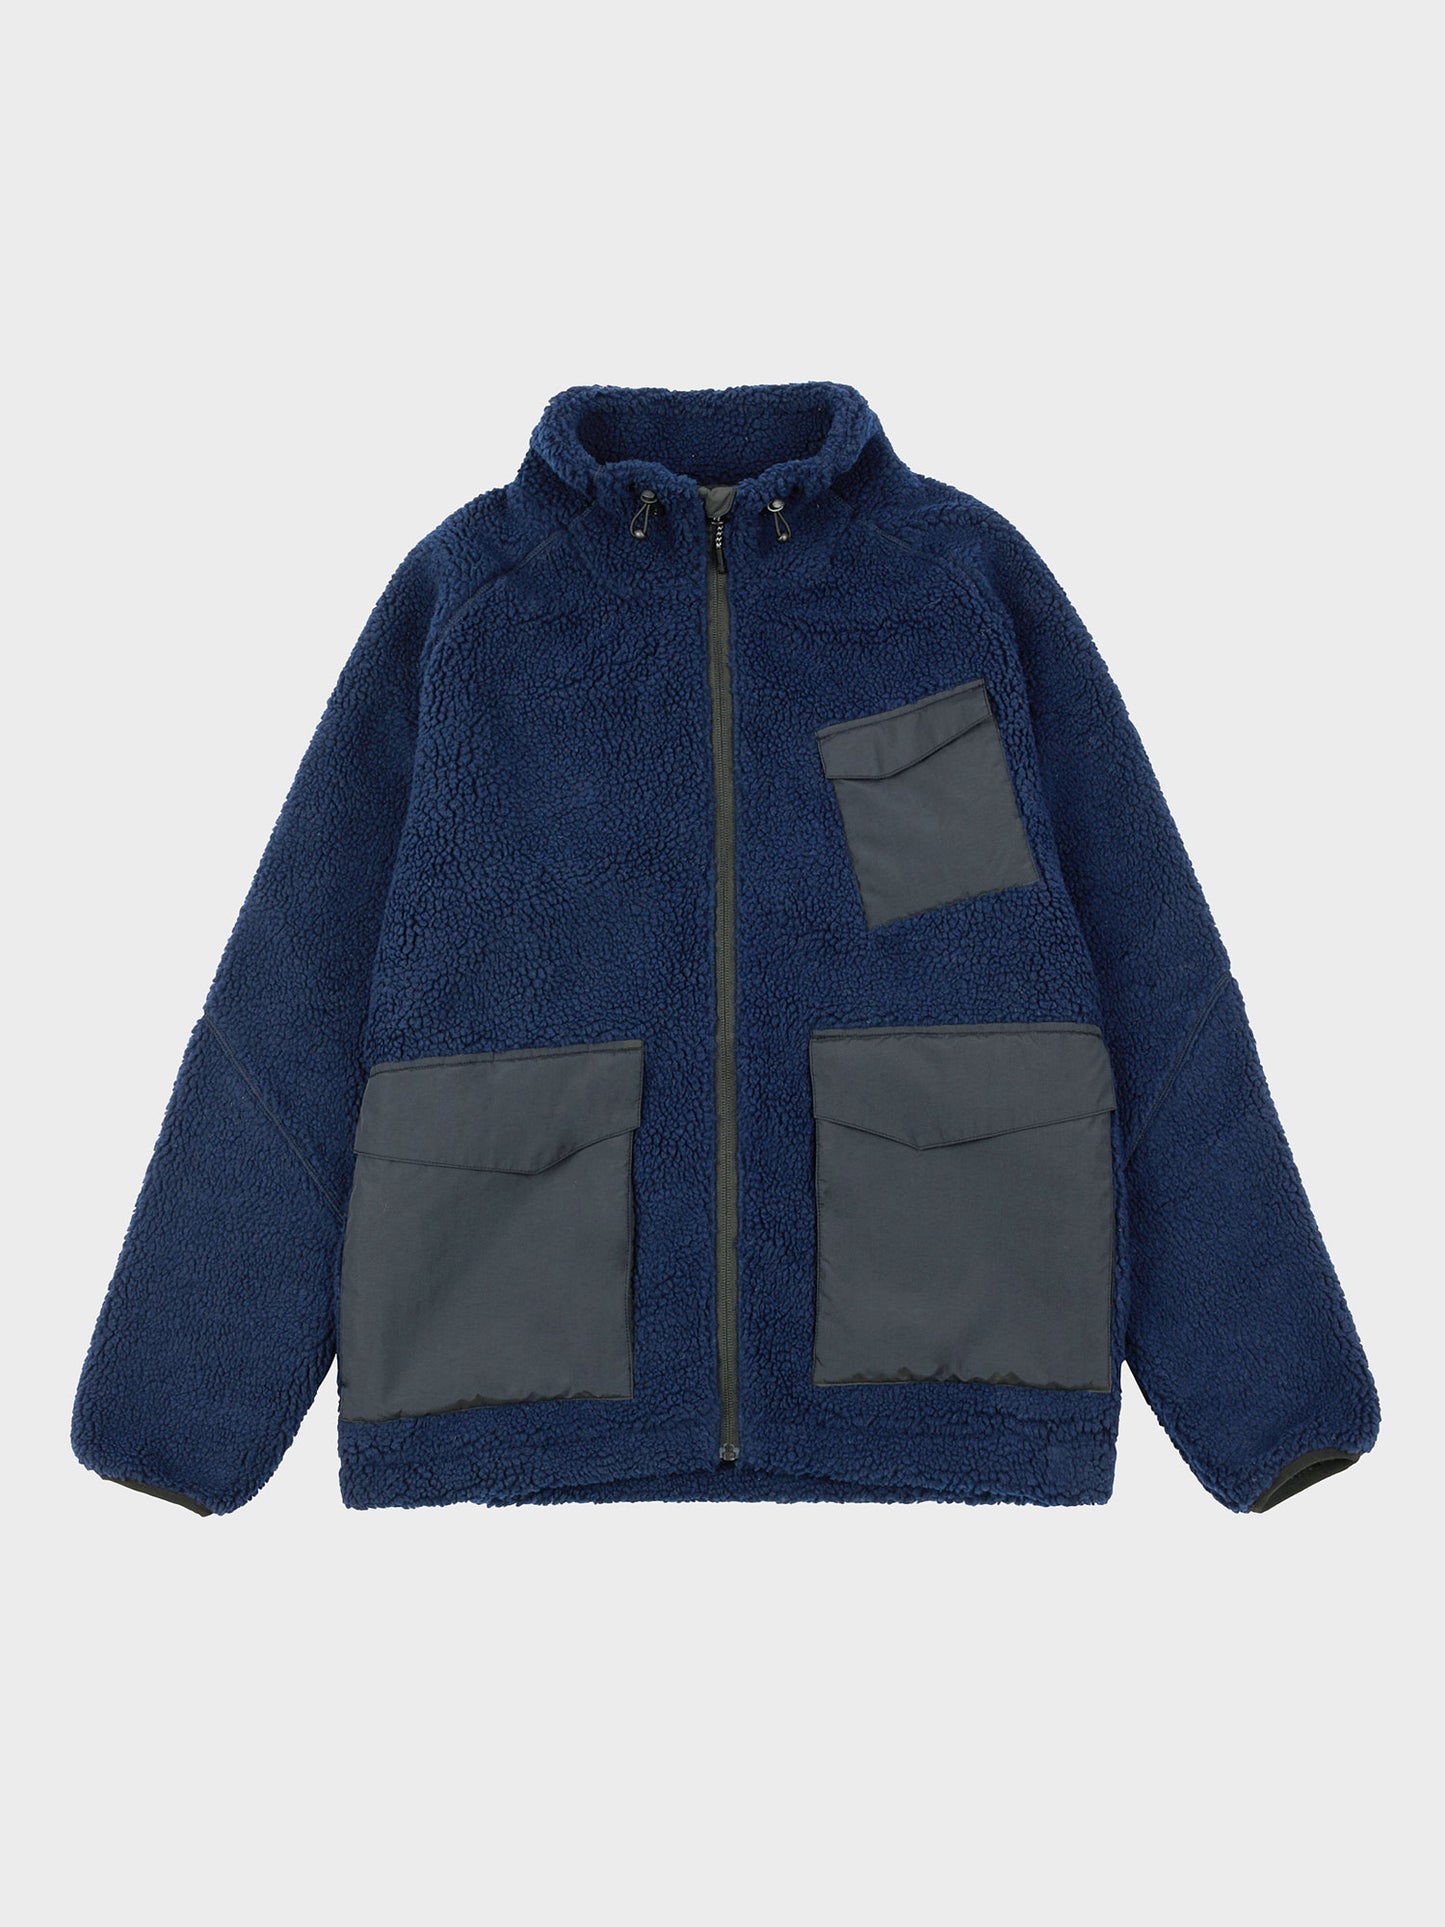 P Bear Angled Pocket Borg Fleece Jacket in Navy Blue